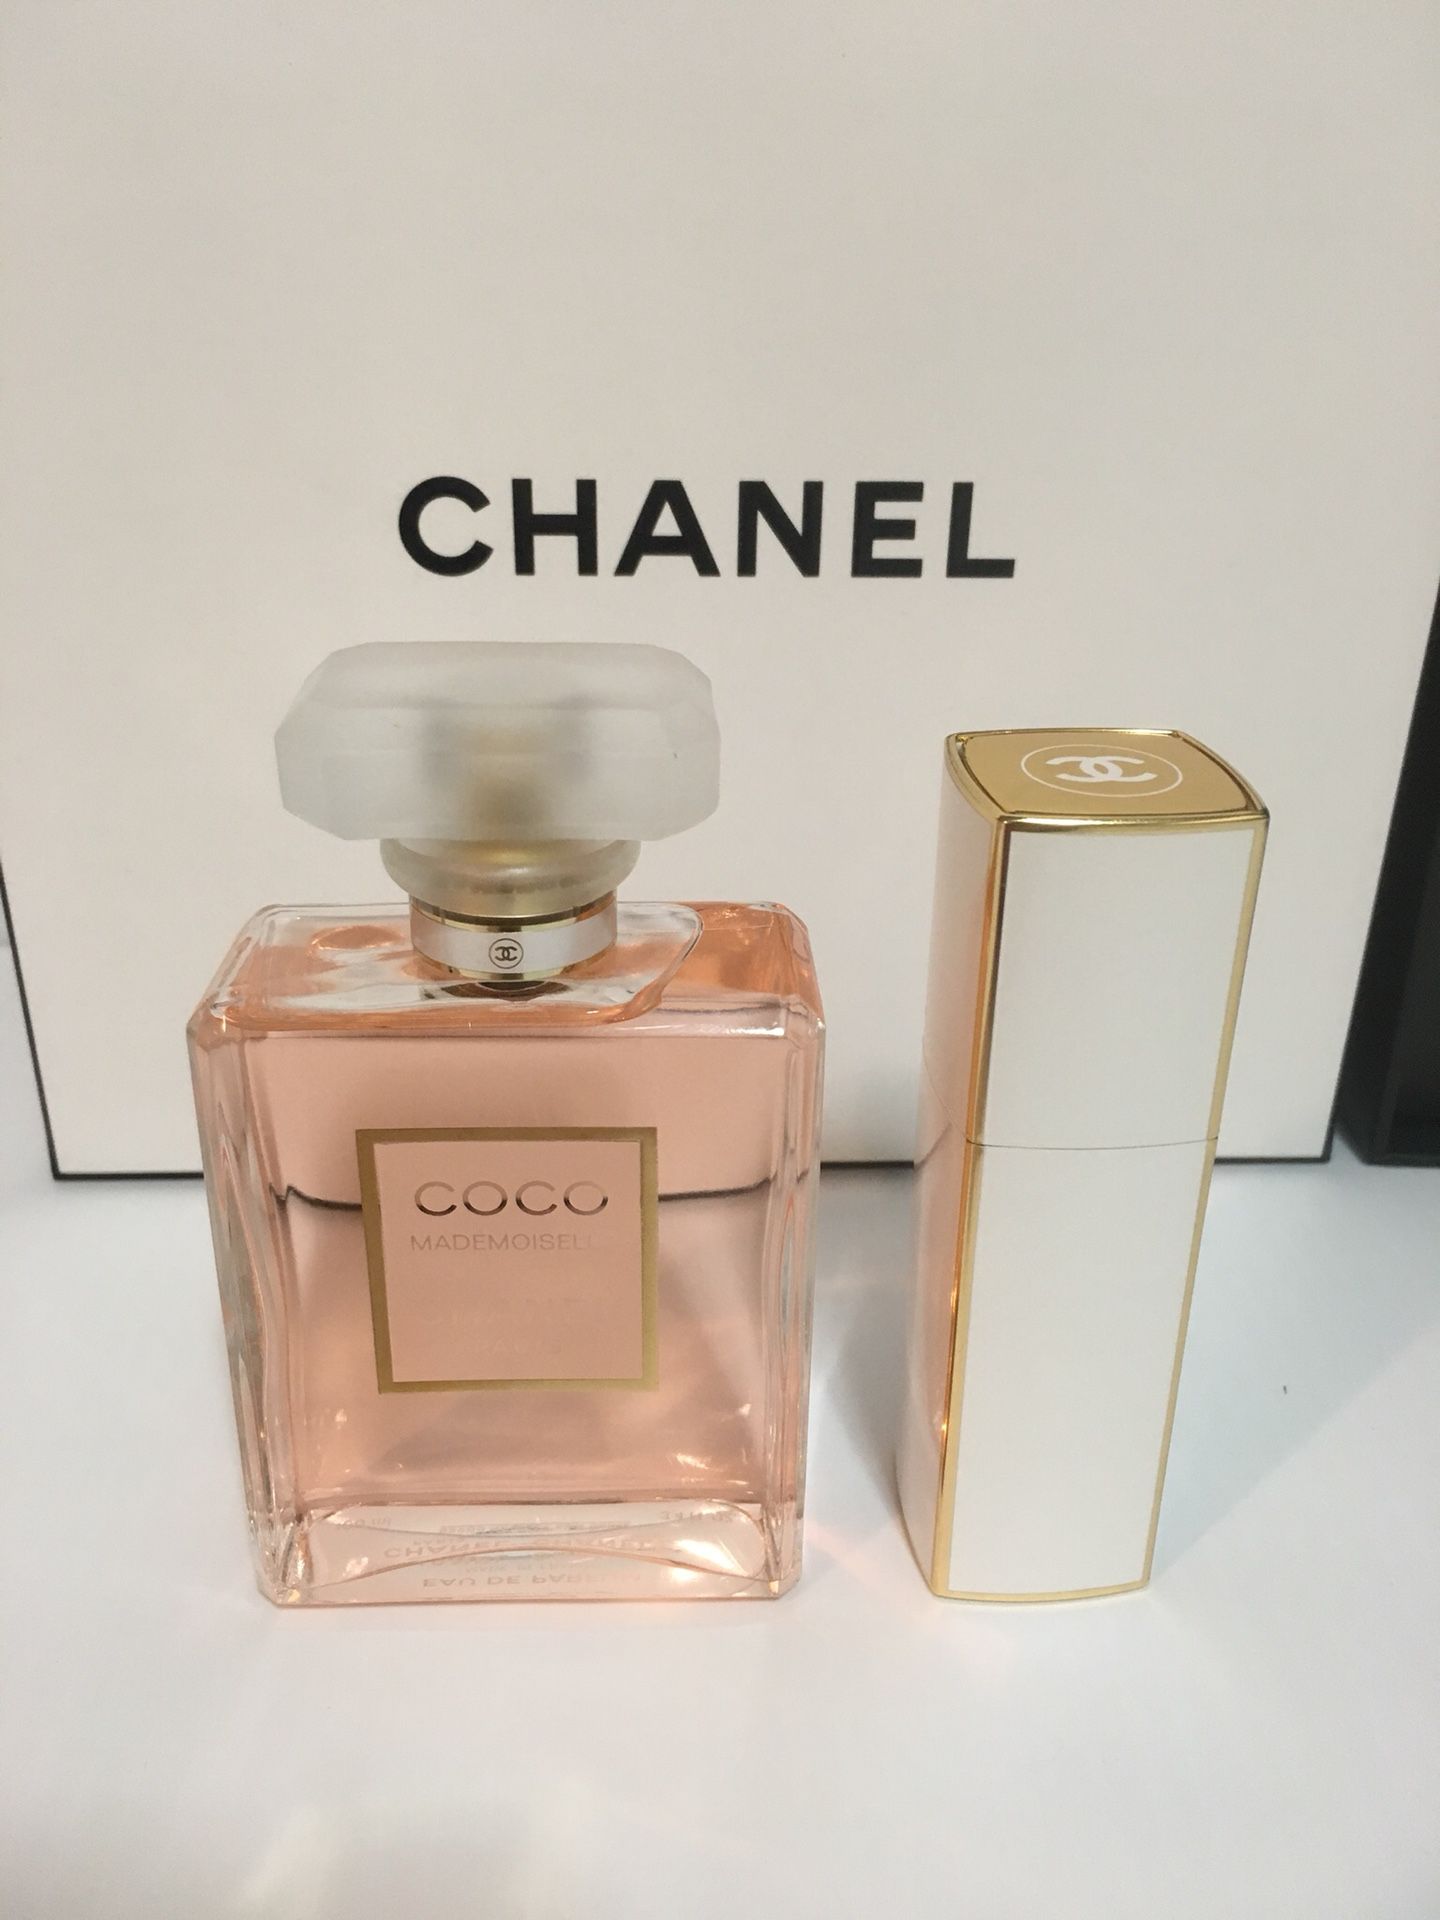 Coco Chanel Mademoiselle Eau De Parfum 3.4oz - $100!! for Sale